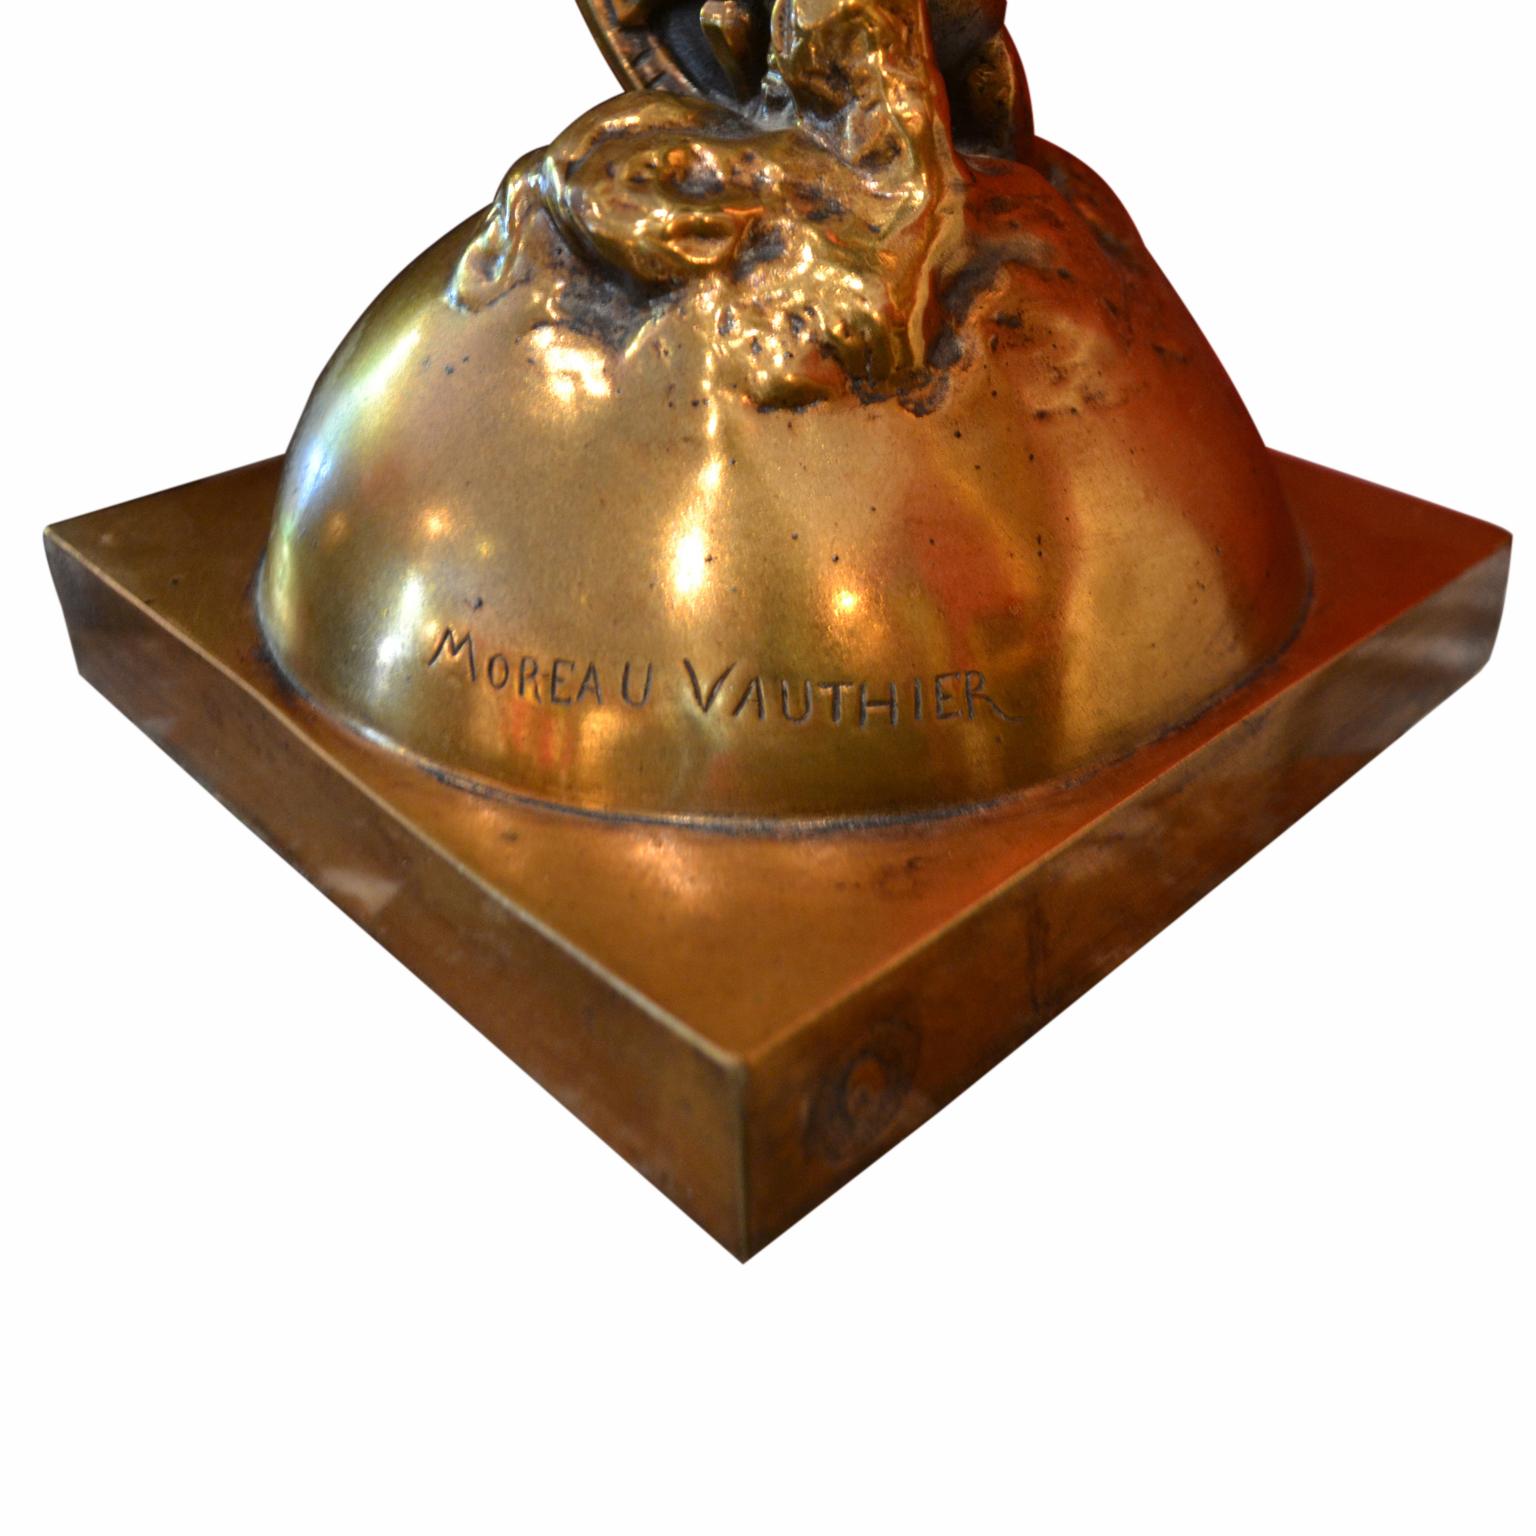 Cast Gilt Bronze Statue Titled “La Fortune” by Augustin Moreau-Vauthier